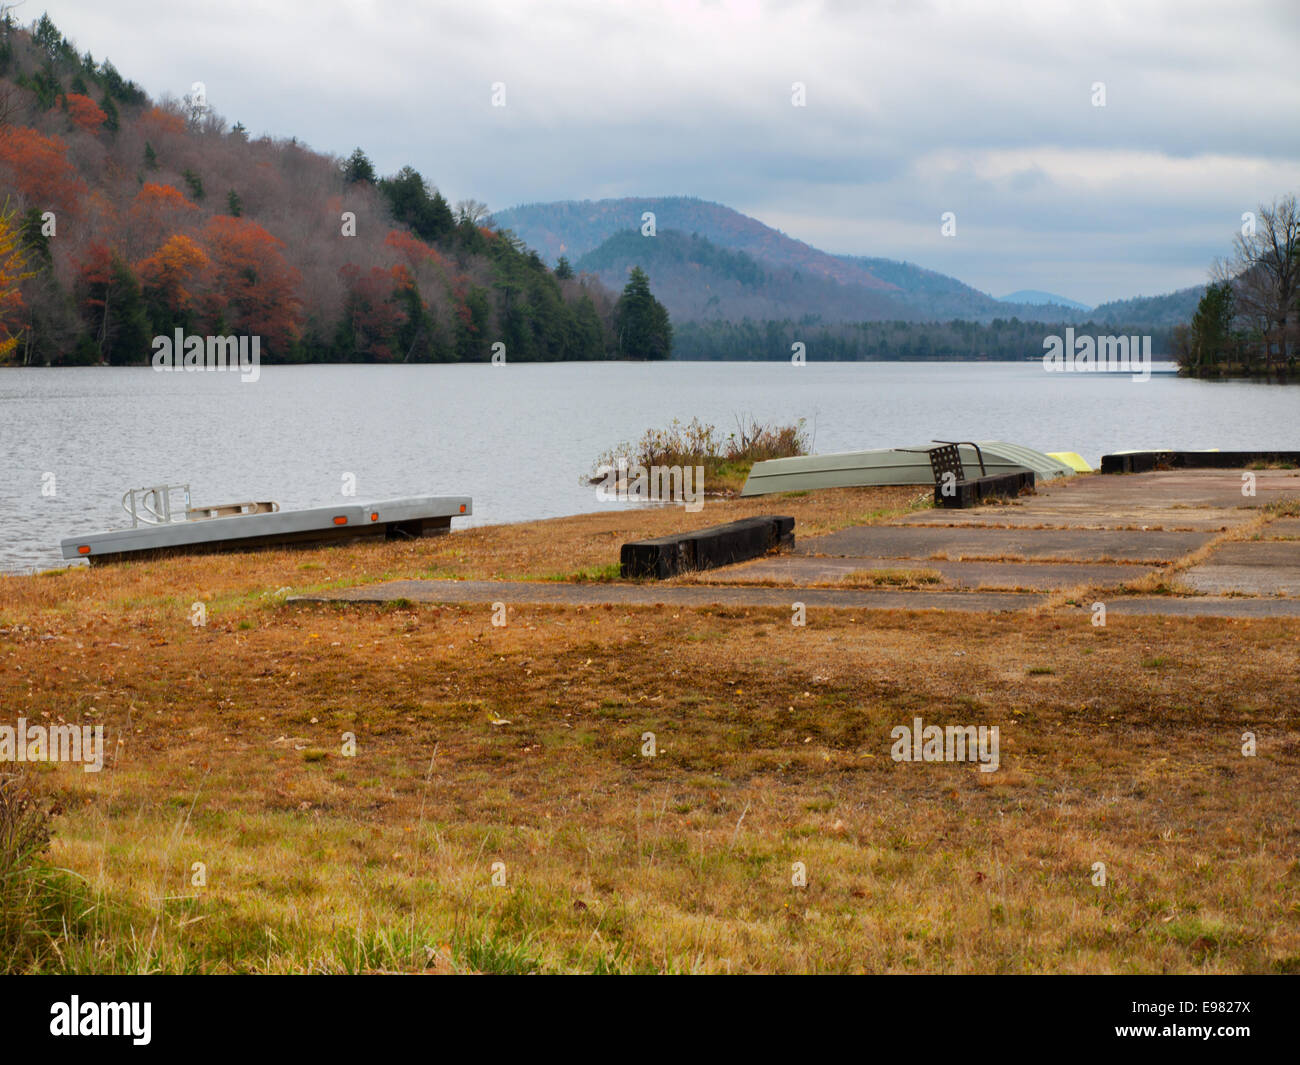 Oxbow Lake in the Adirondack Mountains Stock Photo